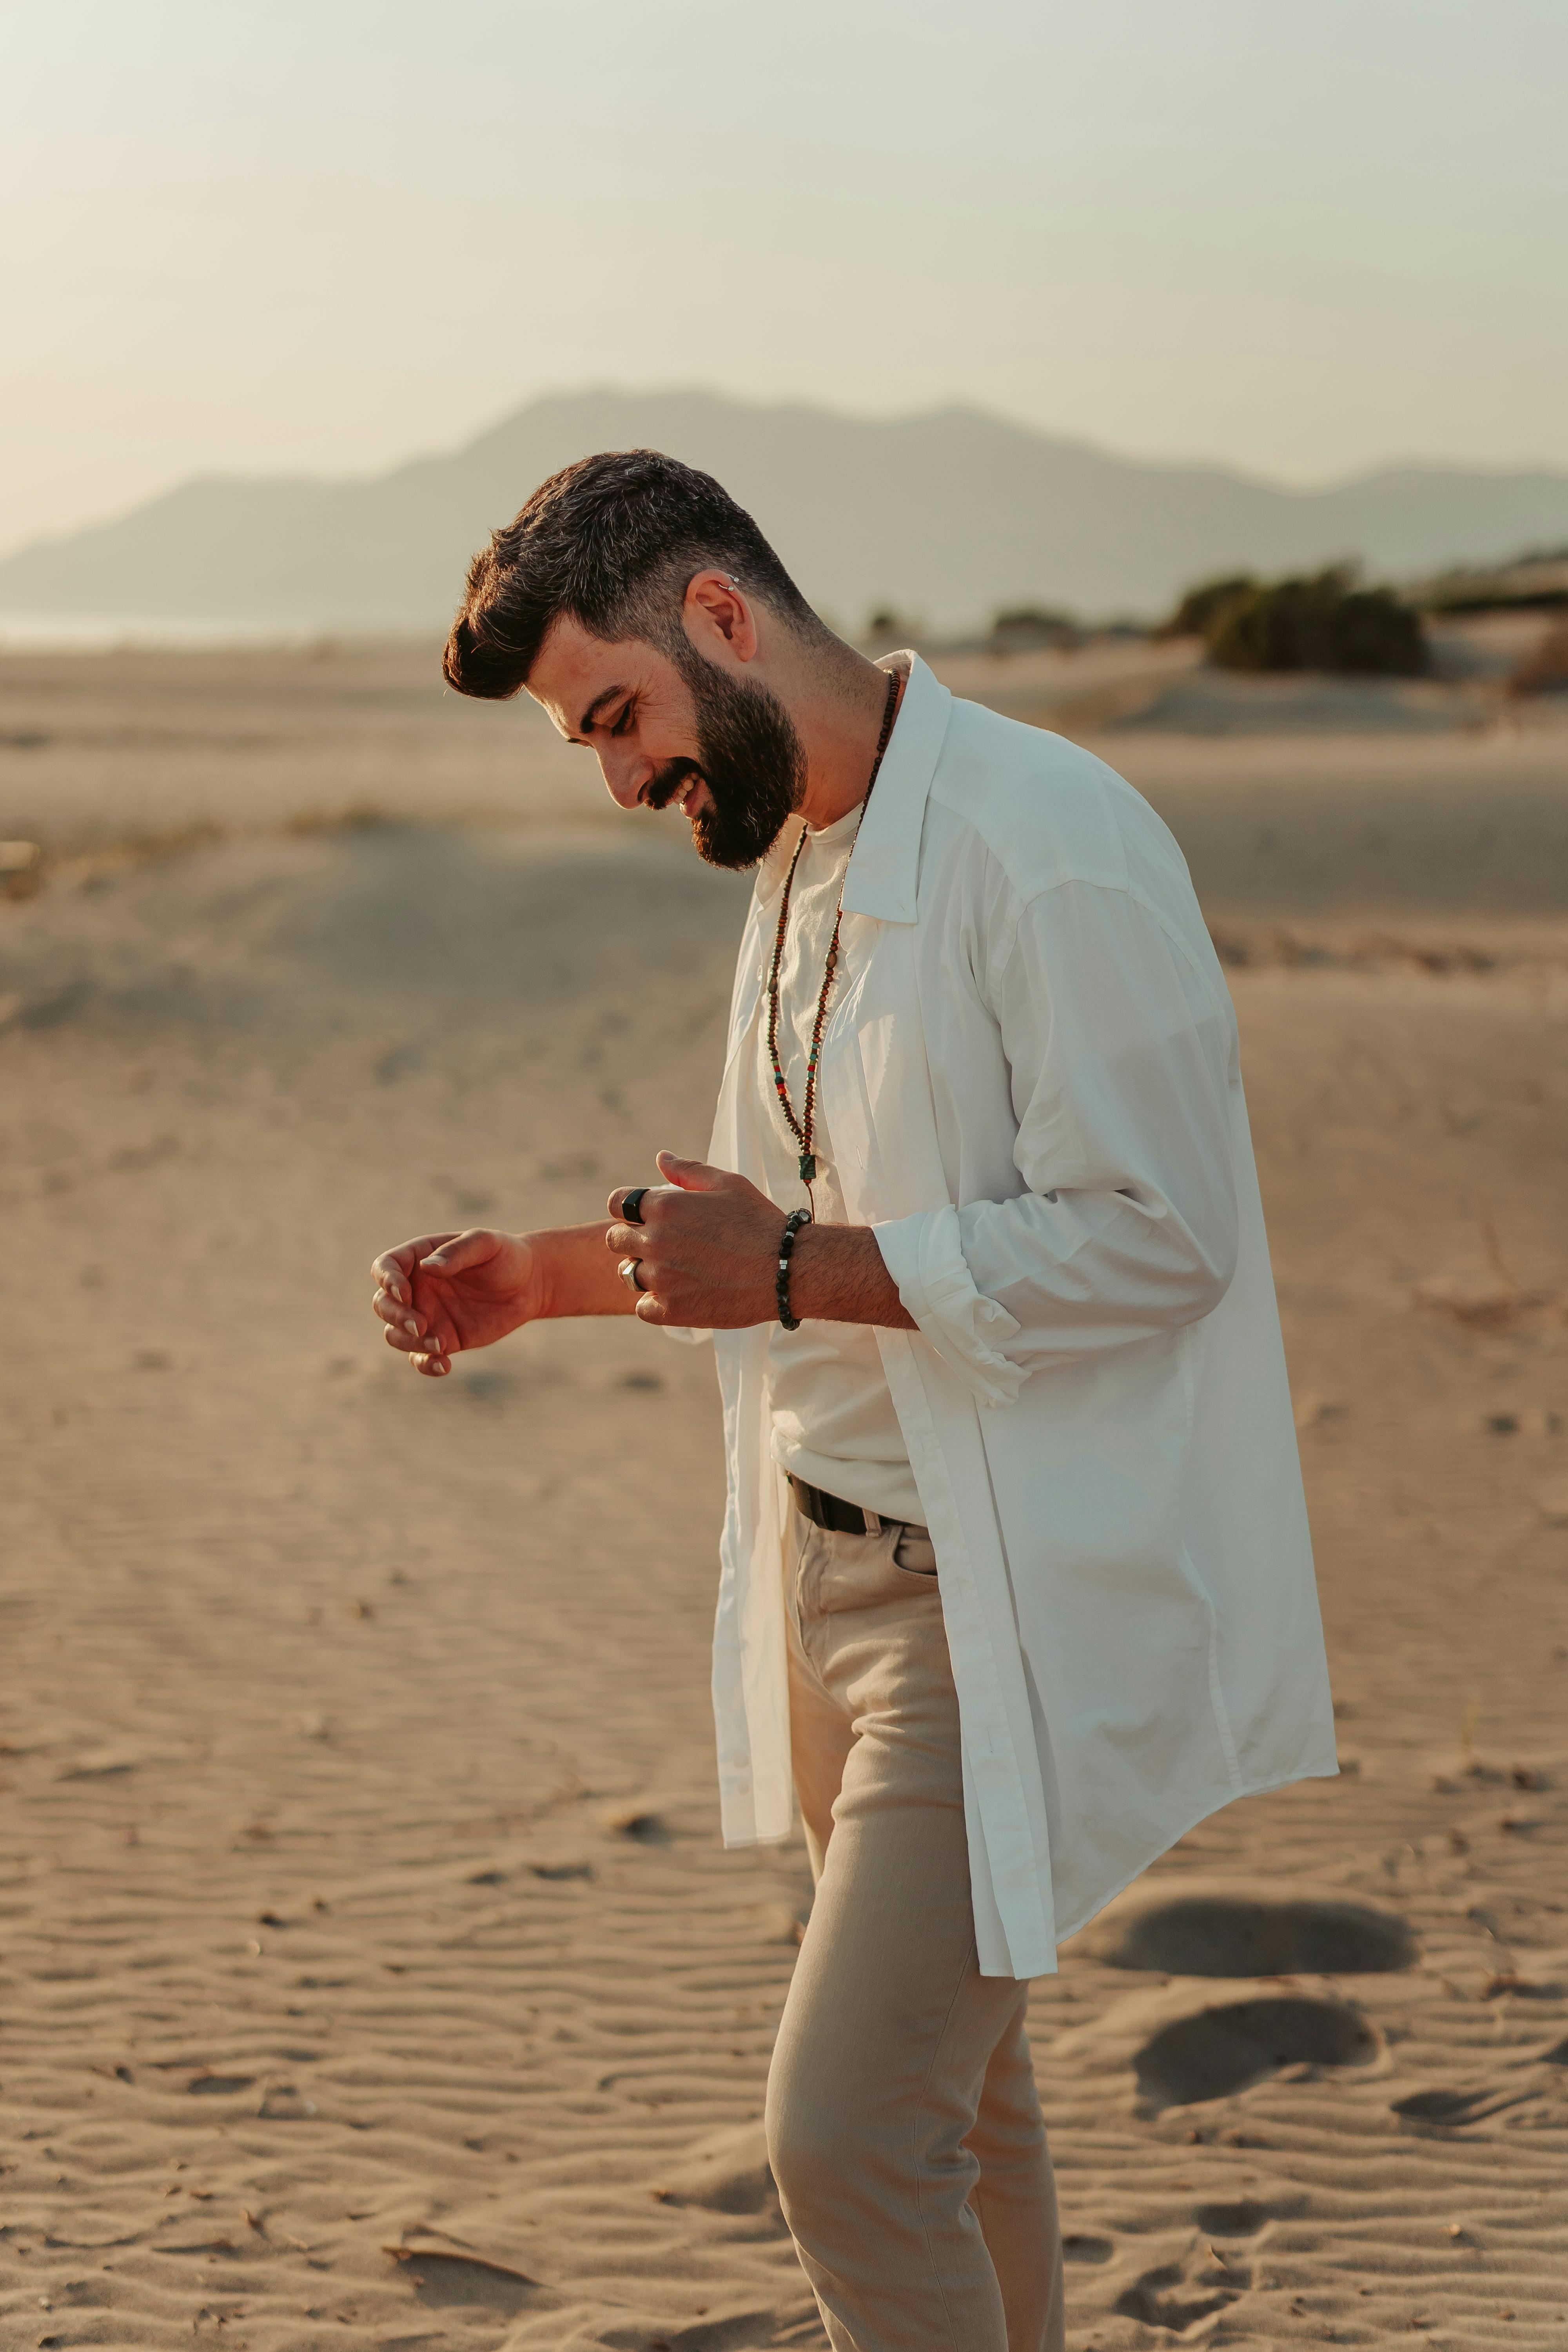 Лучшие фото (300 000+) по запросу «Арабский Мужчина В Платке В Пустыне» · Скачивайте совершенно бесплатно · Стоковые фото Pexels